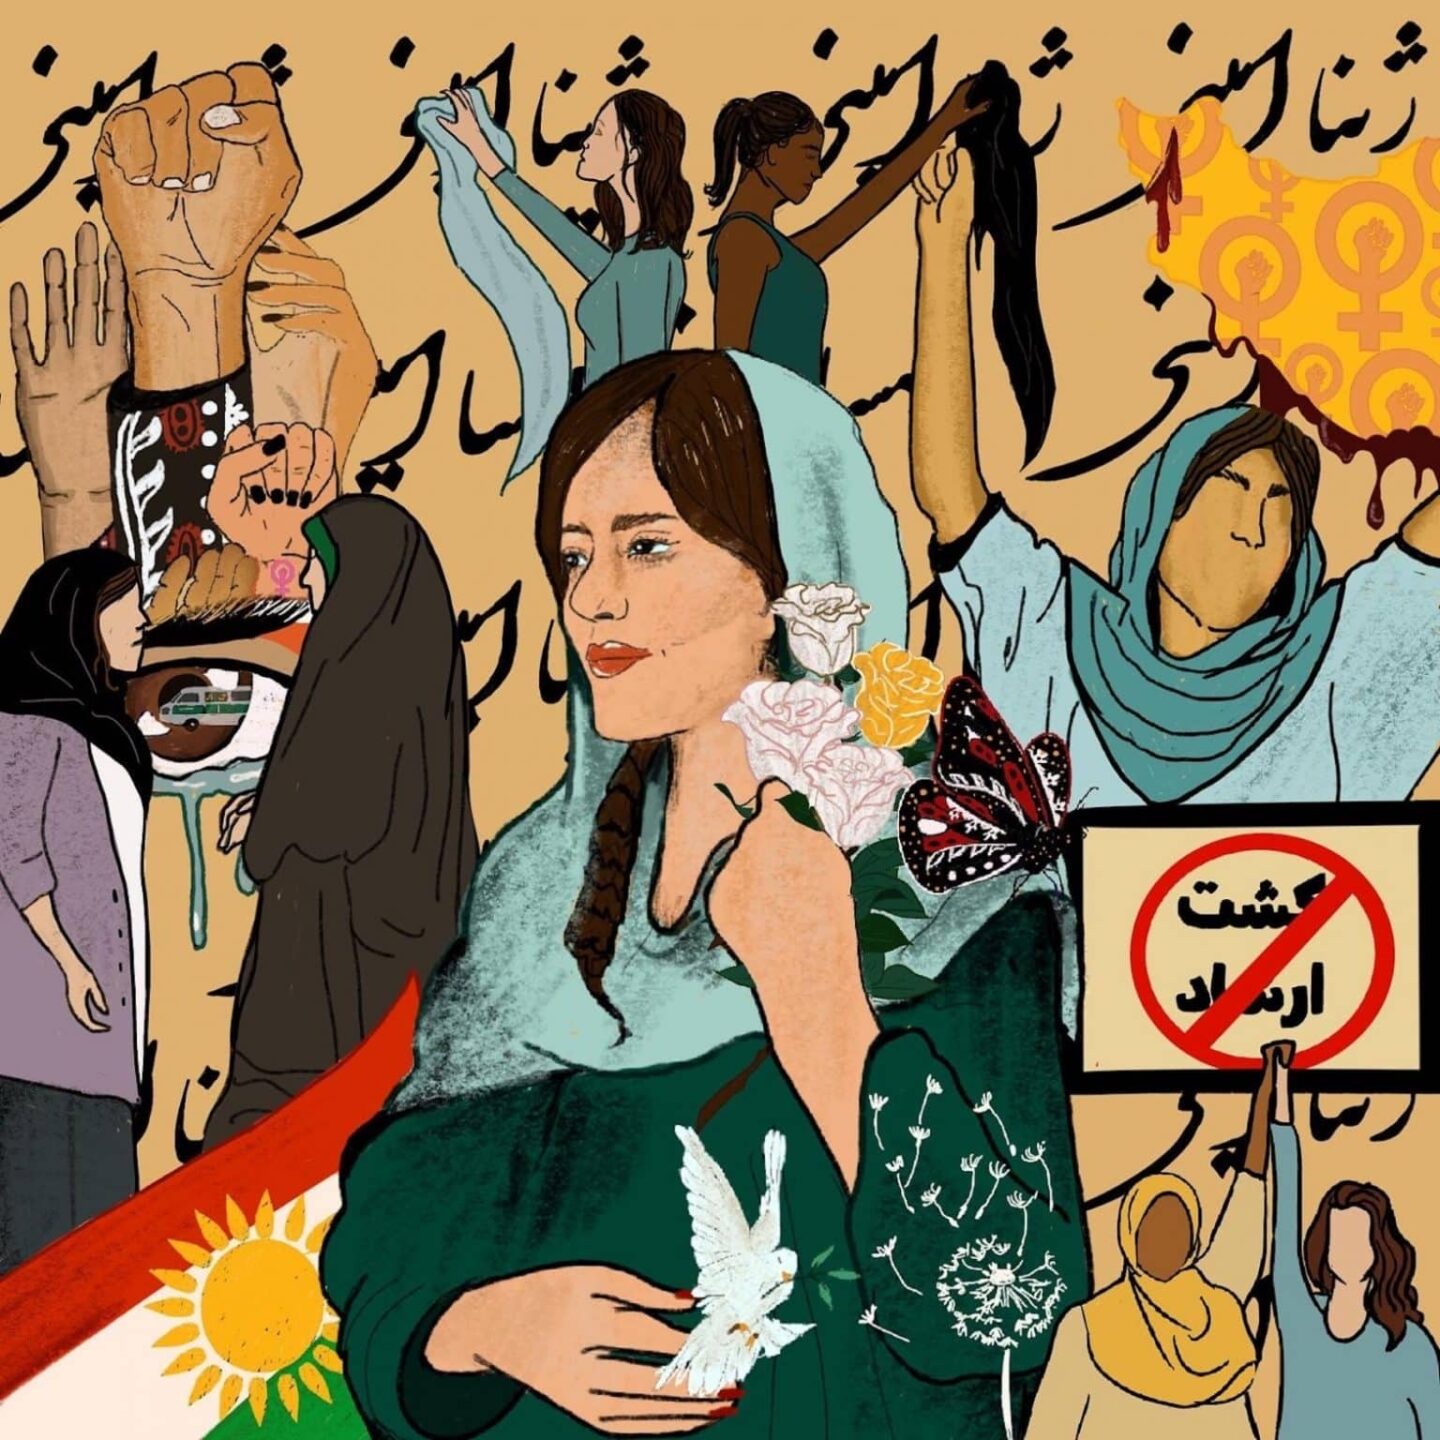 Donna, vita, libertà: prospettive strategiche sulla rivolta in Iran